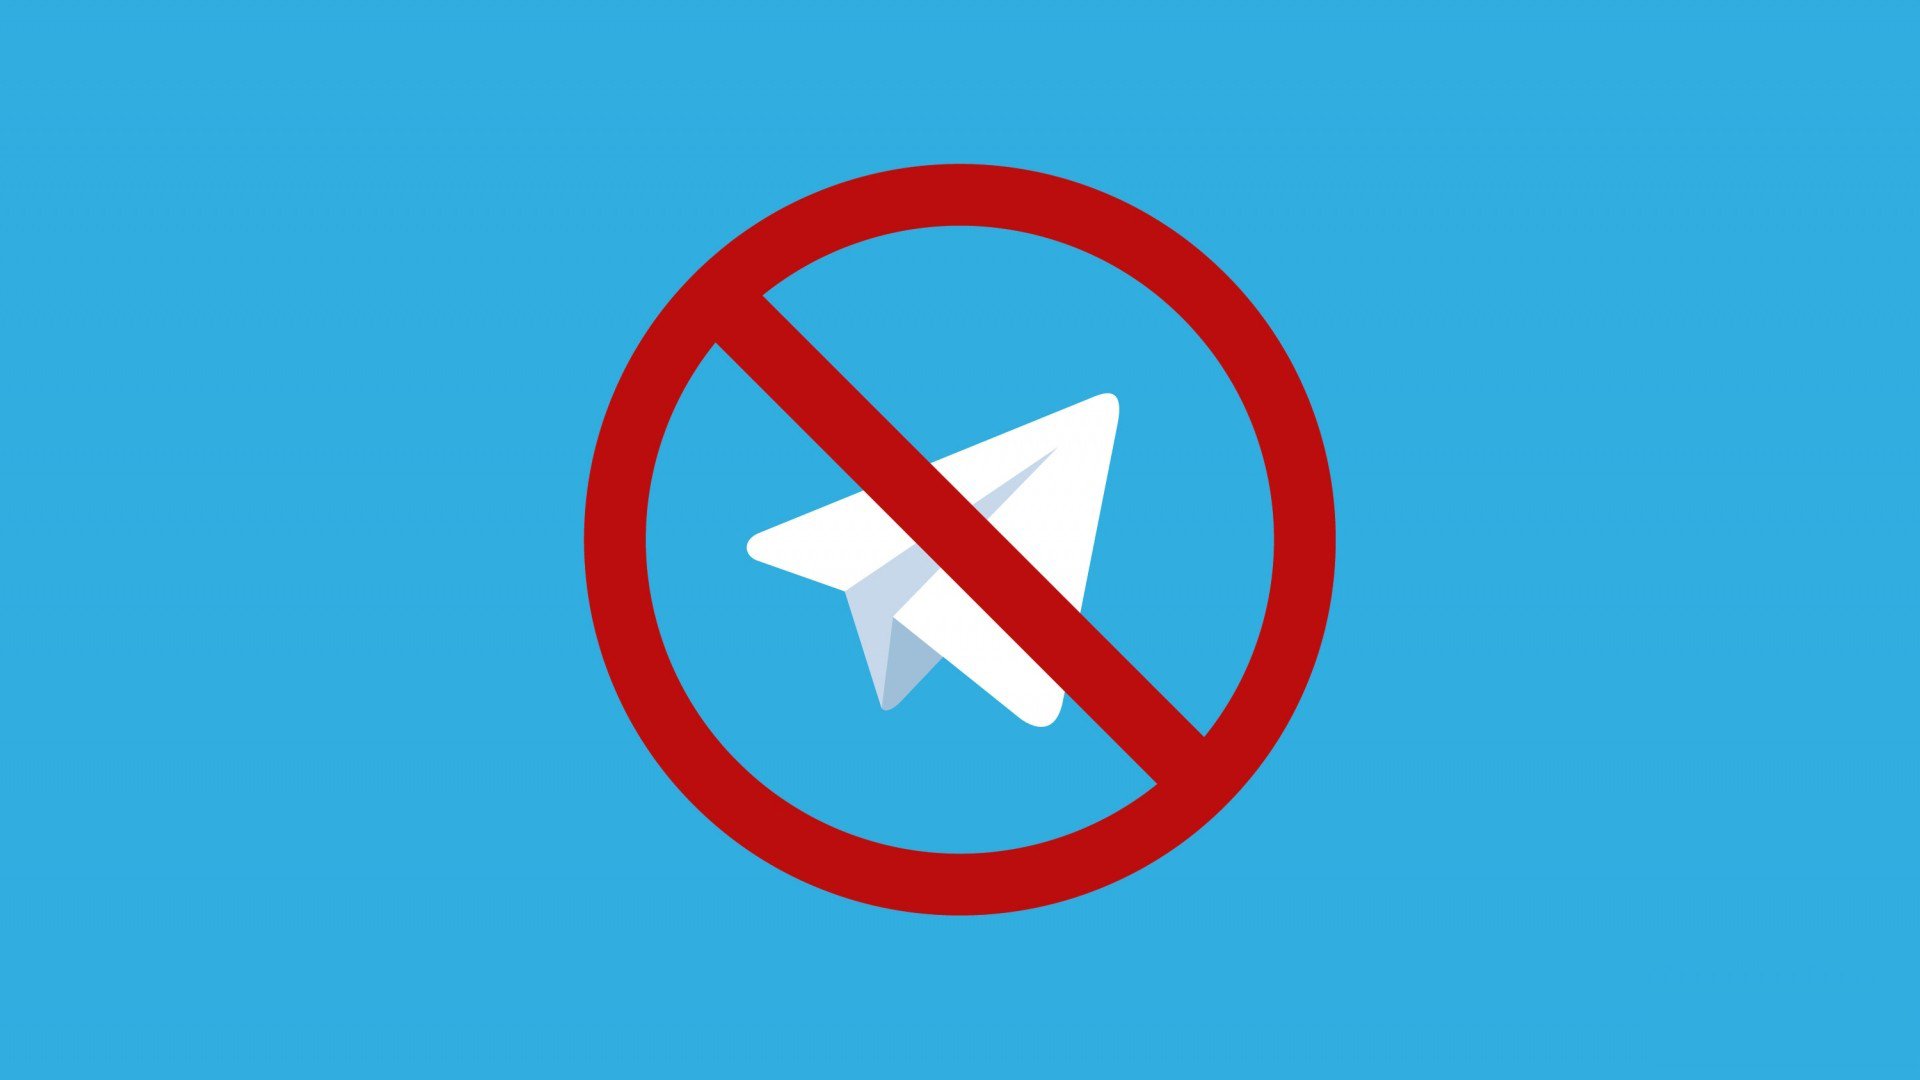 Telegram ignora o bloqueio usando tecnologia militar?